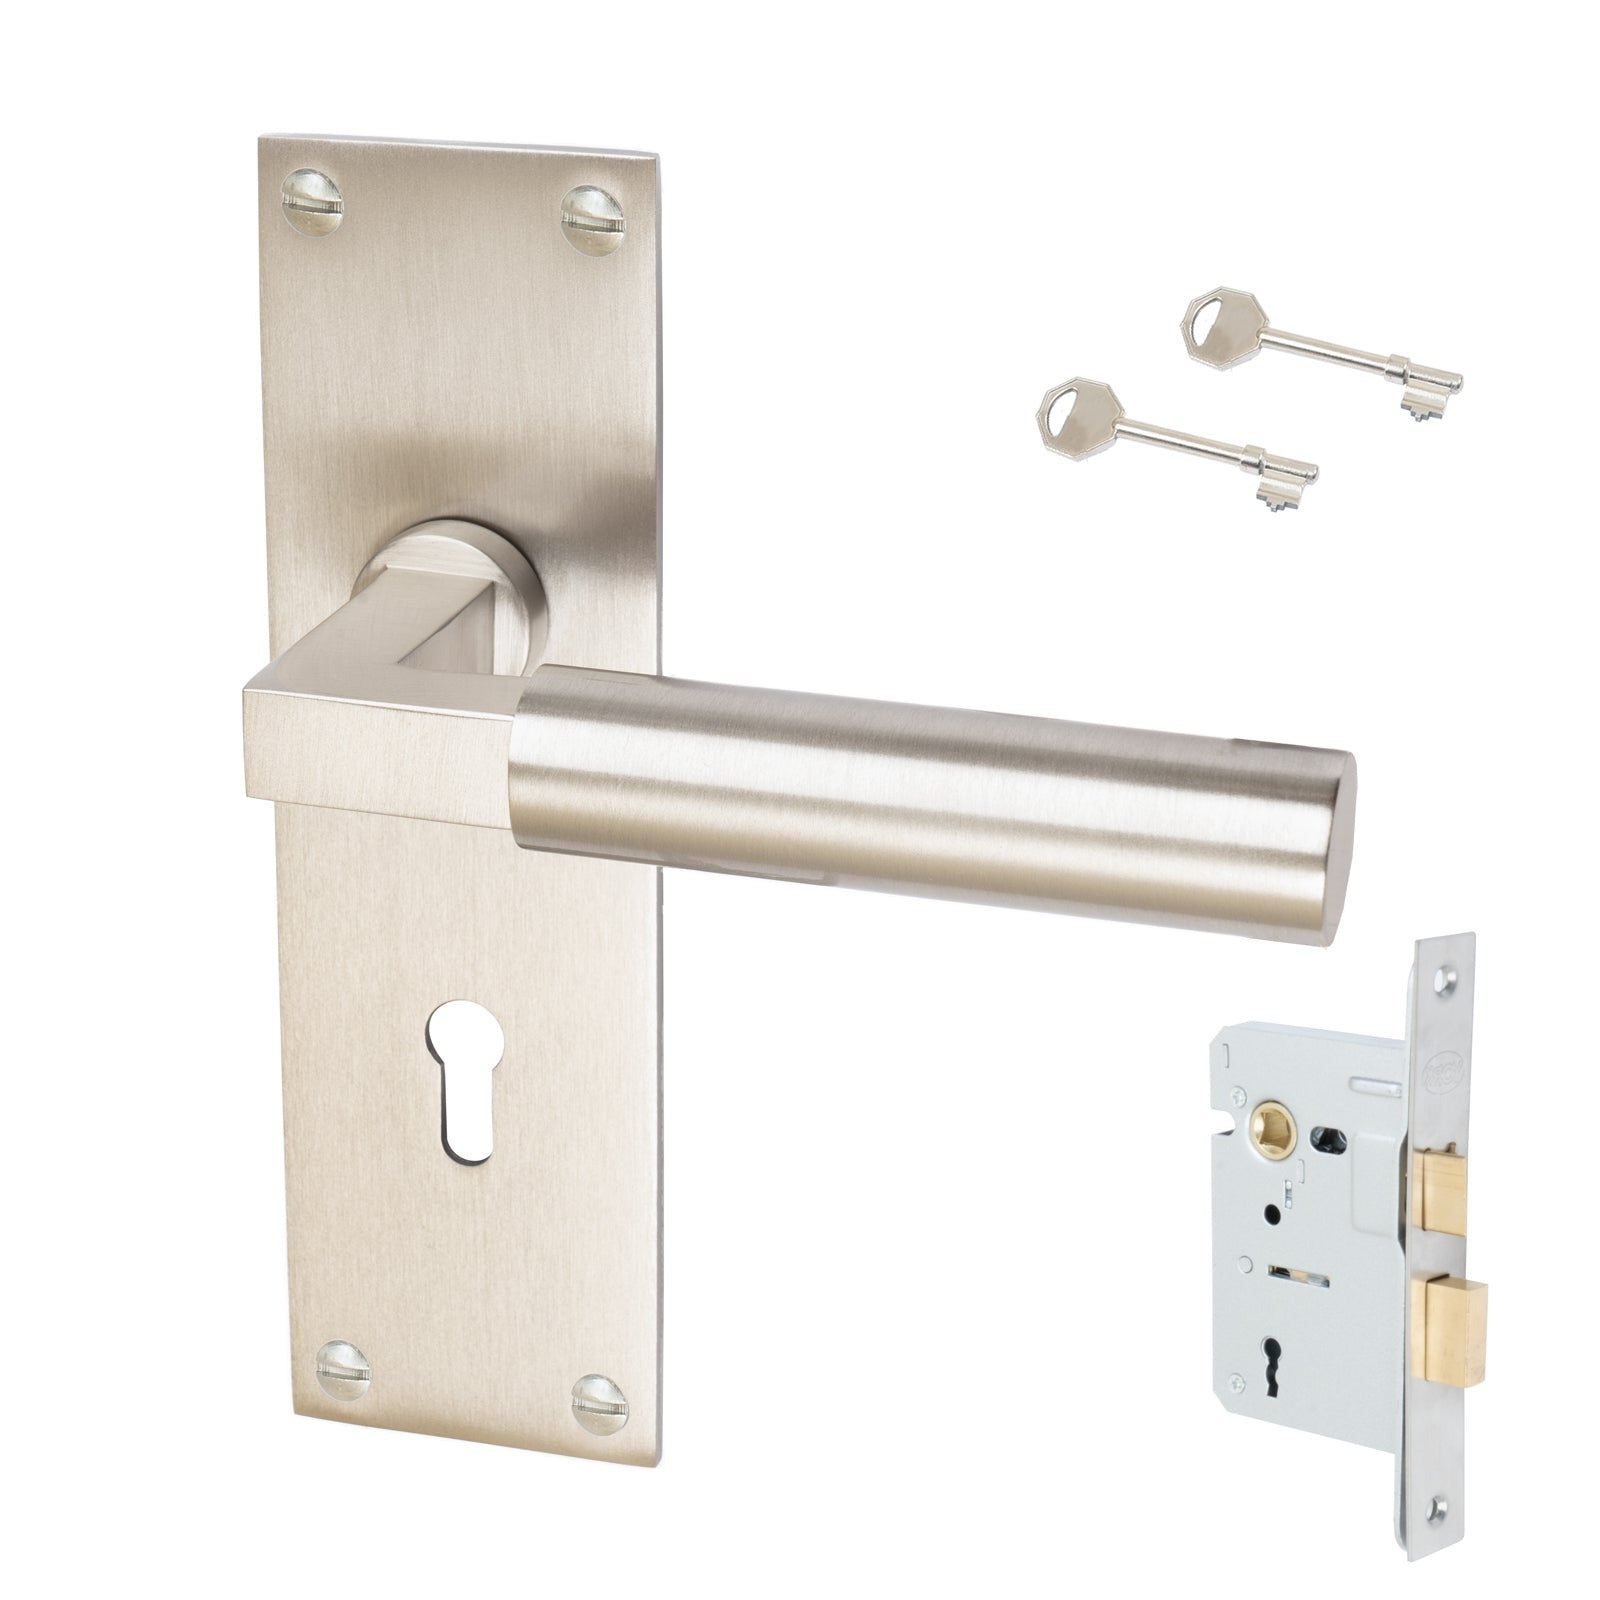 Bauhaus Door Handles On Plate Lock Handle Set in Satin Nickel 